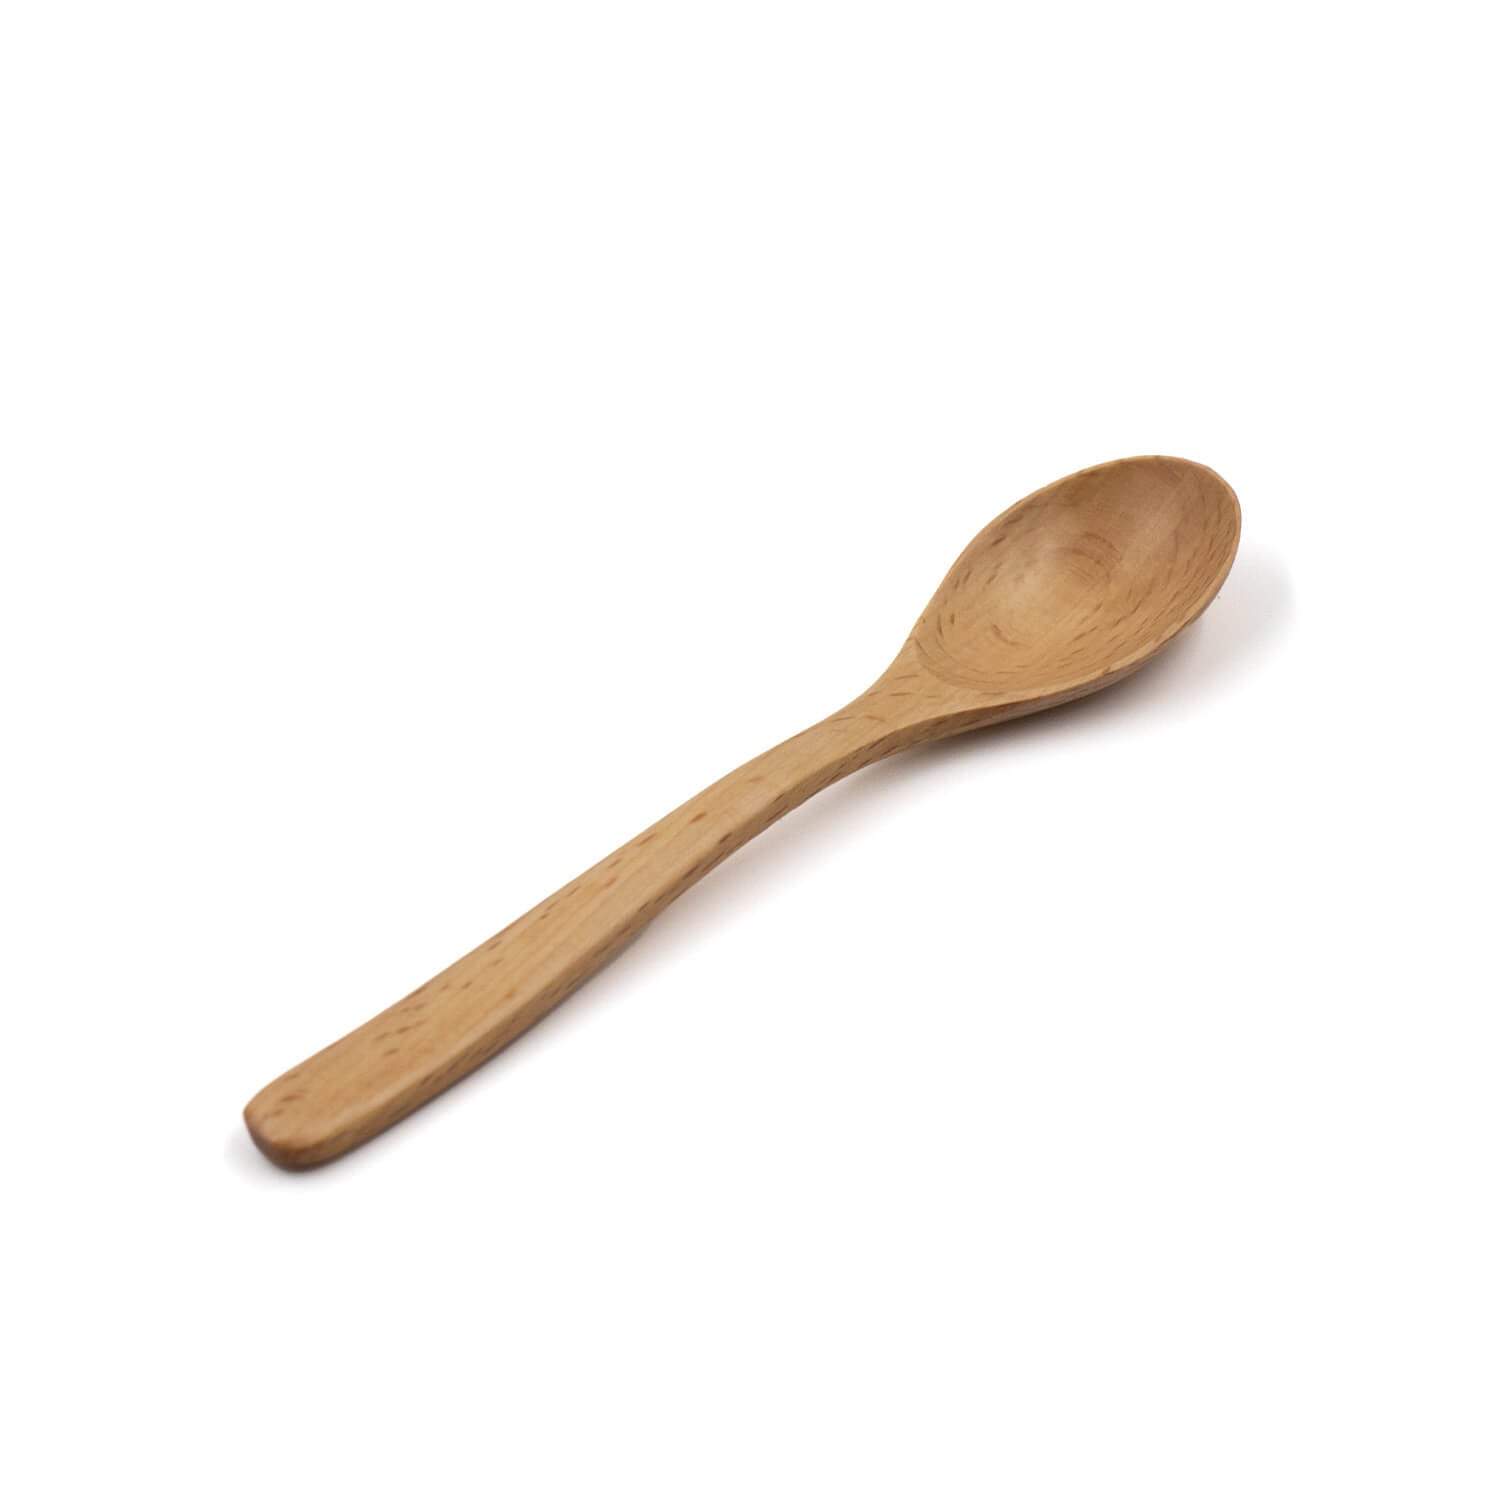 Beech wood spoon 140mm